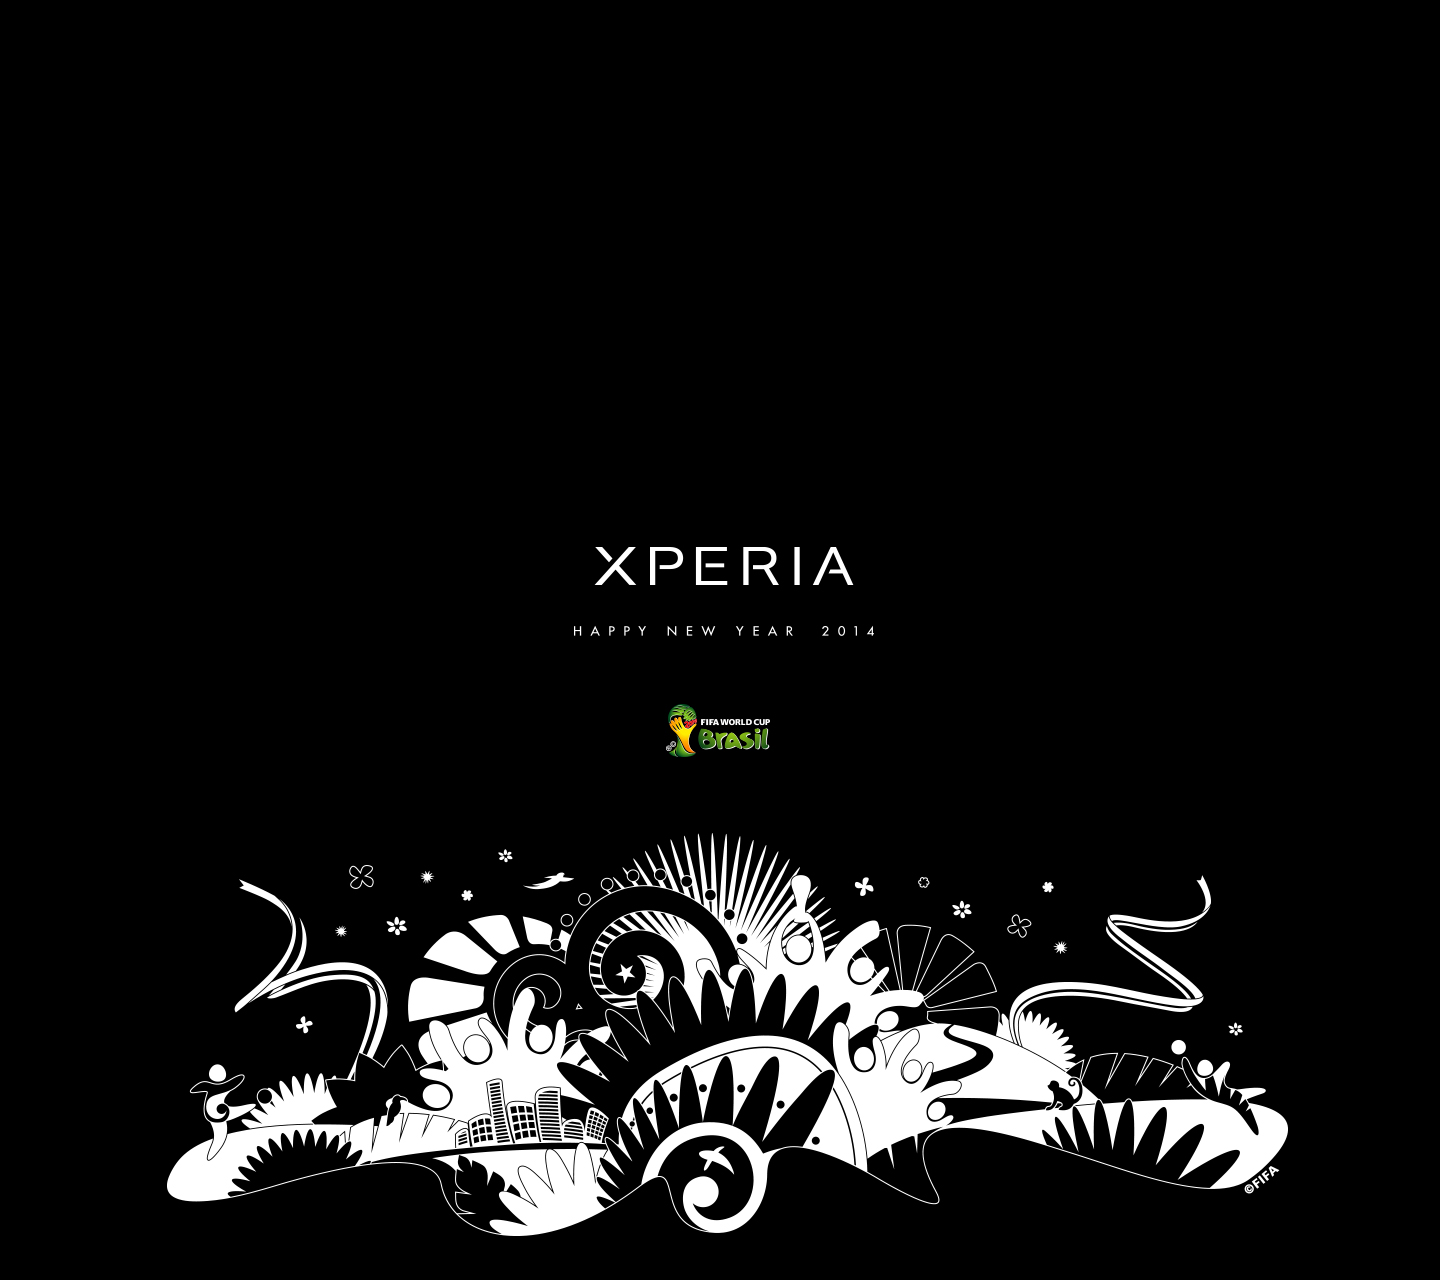 壁紙ダウンロード Xperia エクスペリア 公式サイト